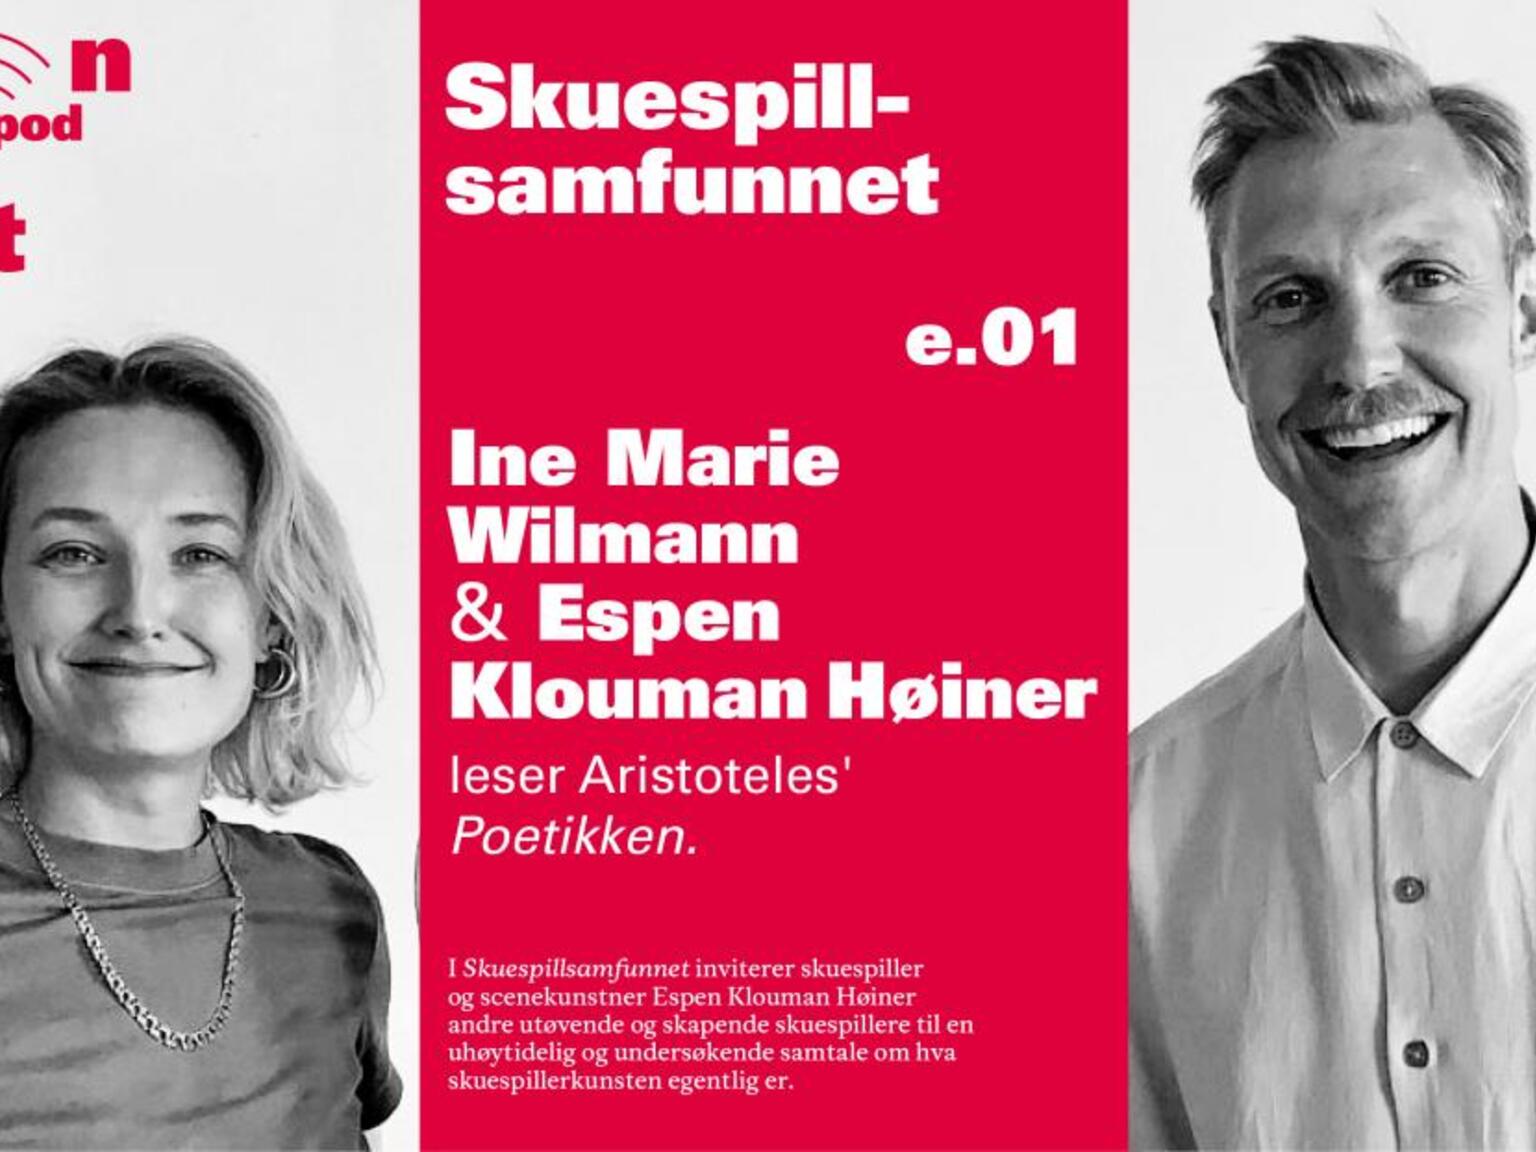 Ine Marie Wilman var først ut i Espen Klouman Høines  podcast Skuespillsamfunnet. Foto: Klouman Høiner